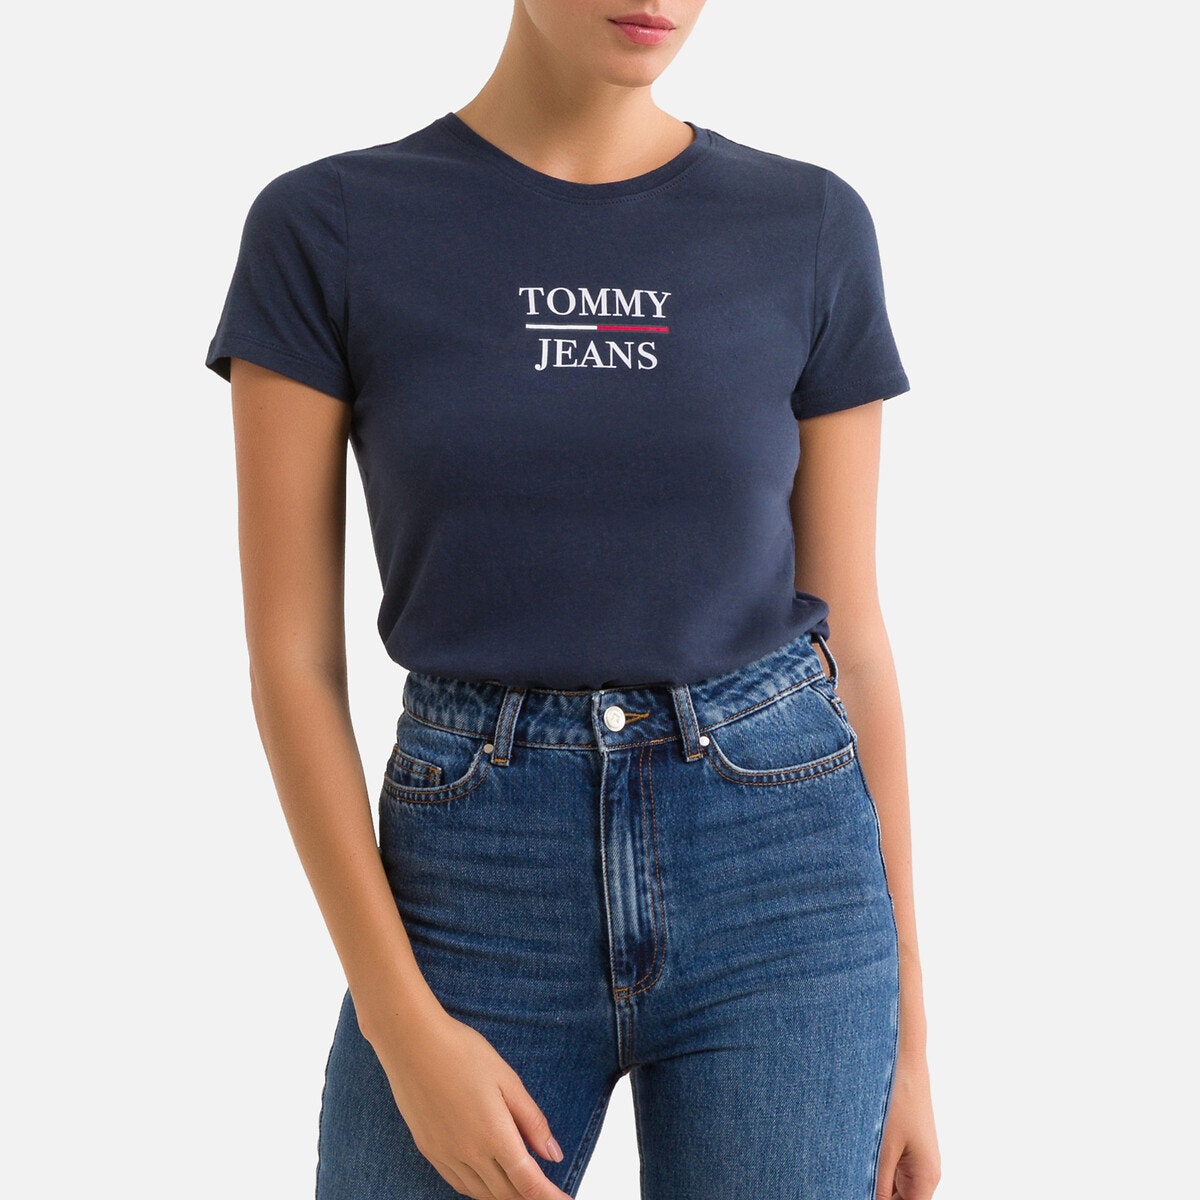 ΓΥΝΑΙΚΑ | Μπλούζες & Πουκάμισα | T-shirts Κοντομάνικο T-shirt με λογότυπο